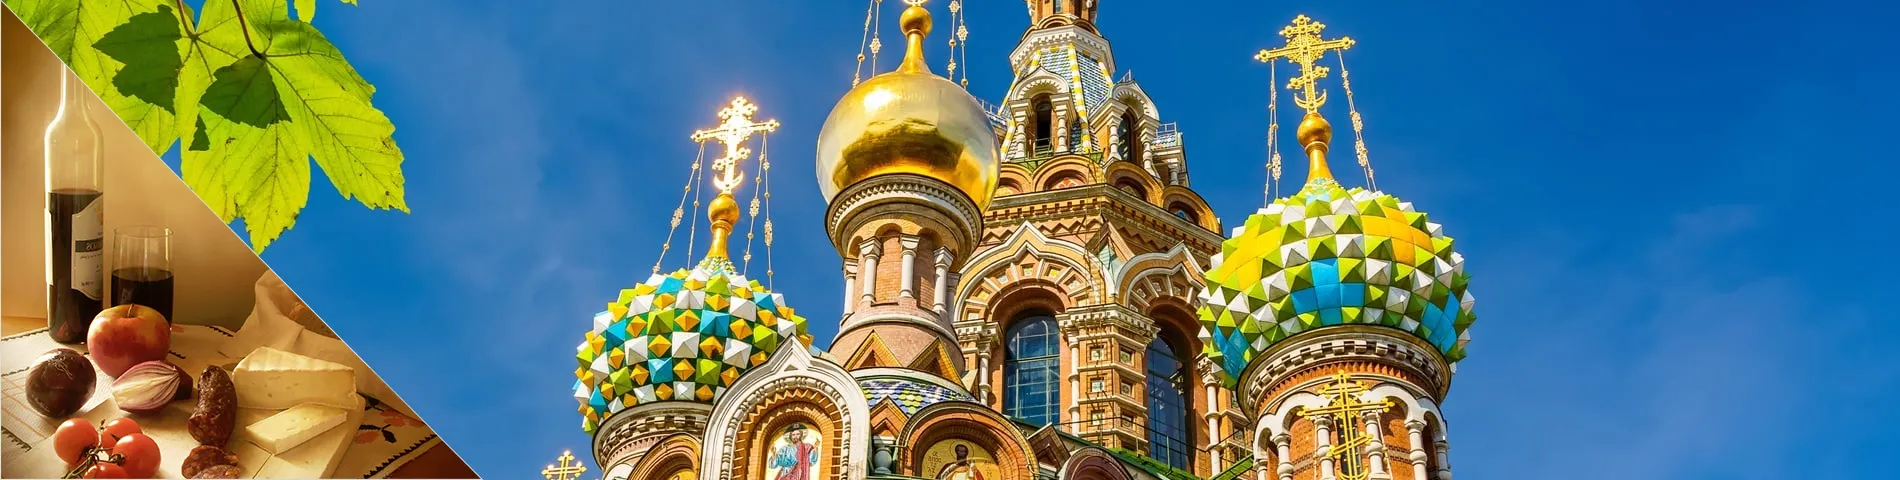 São Petersburgo - Russo & Cultura 